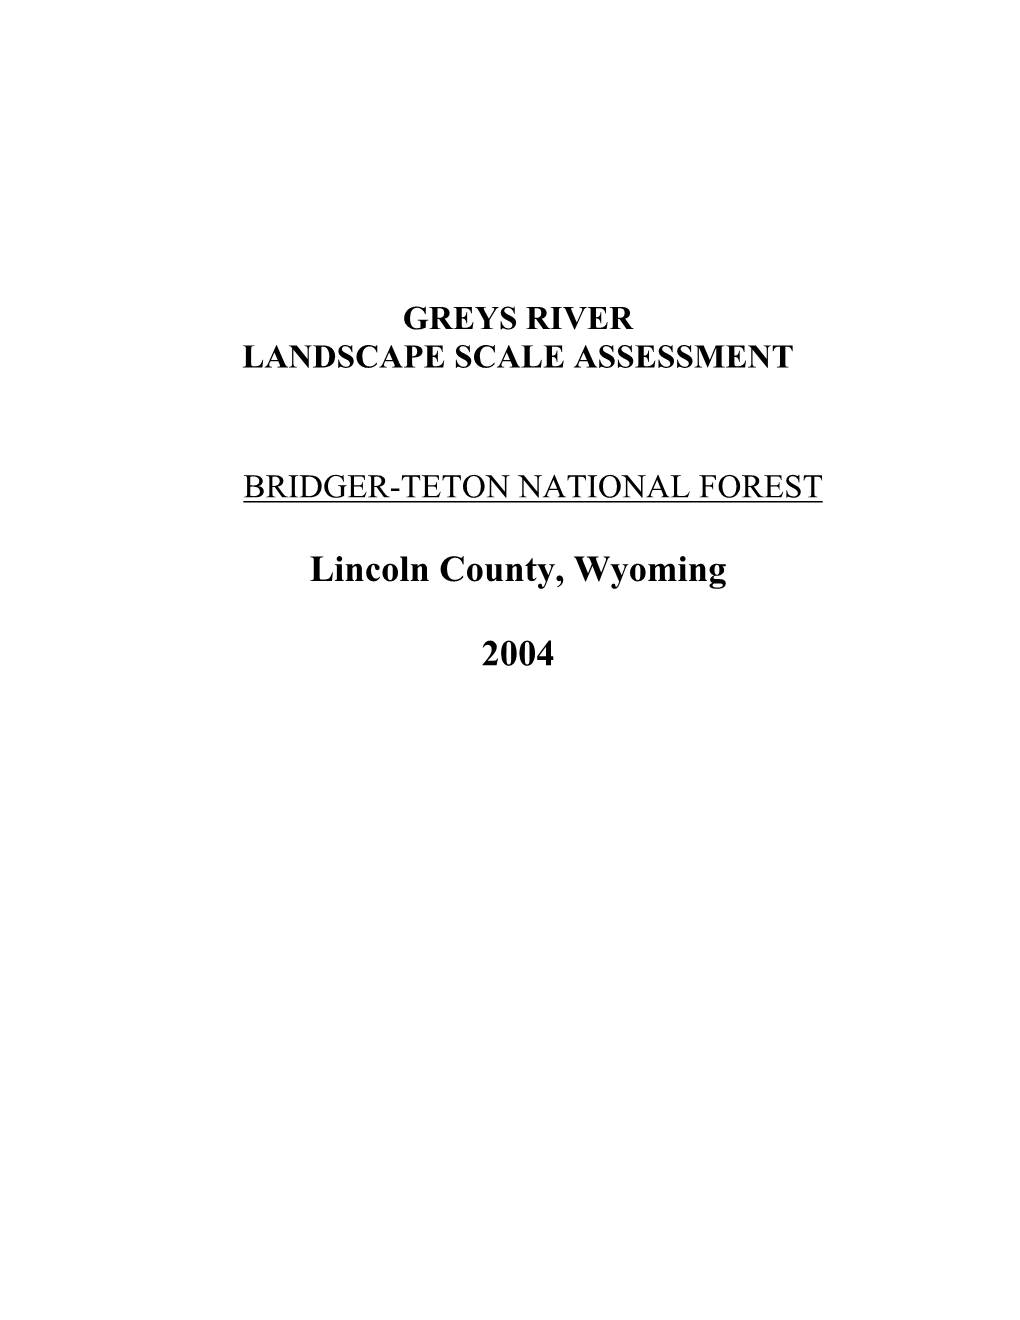 Greys River Landscape Scale Assessment Bridger-Teton National Forest